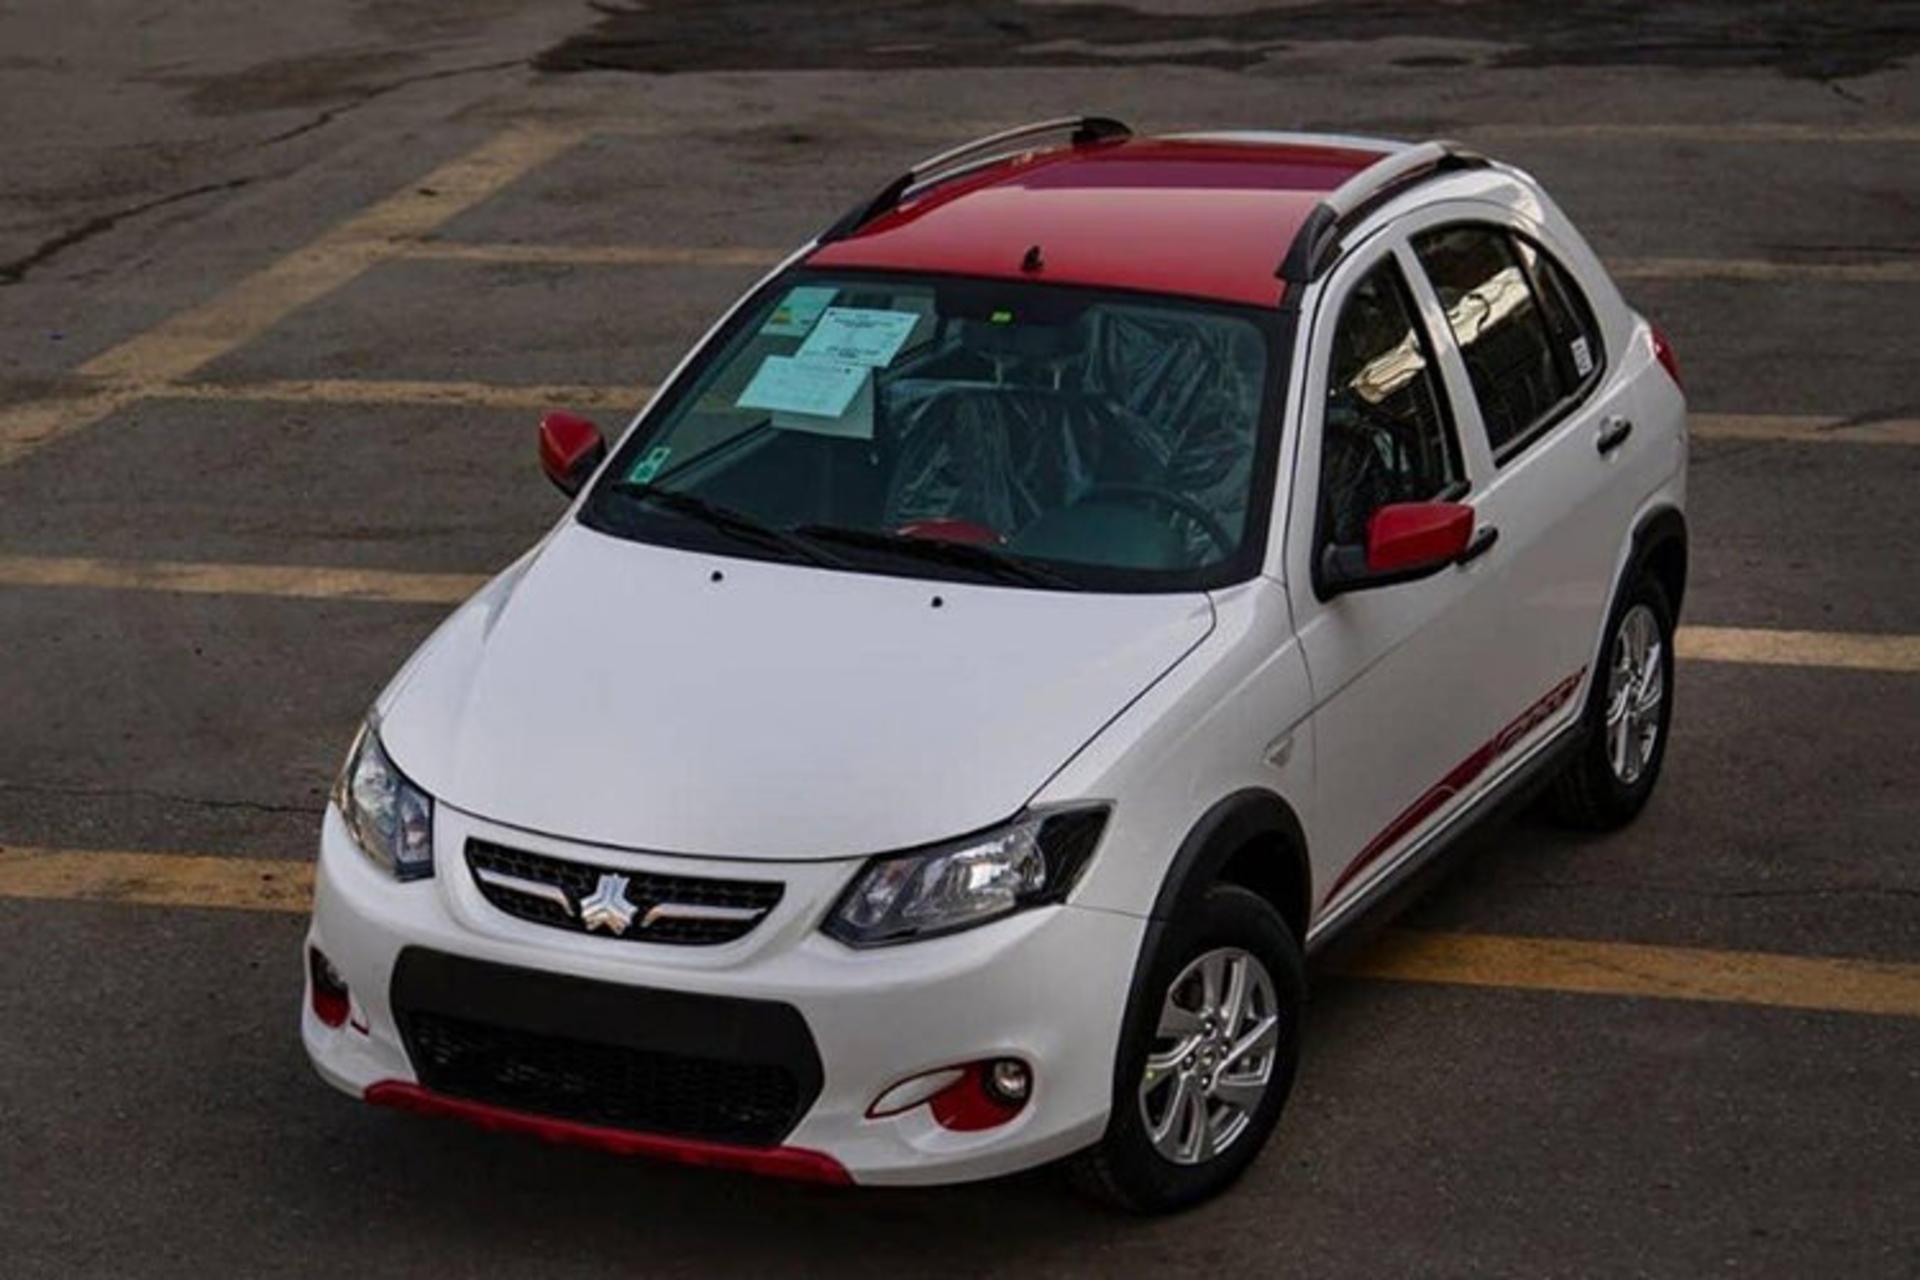 خودرو سایپا کوییک آر سفید با سقف قرمز / Saipa Quick R